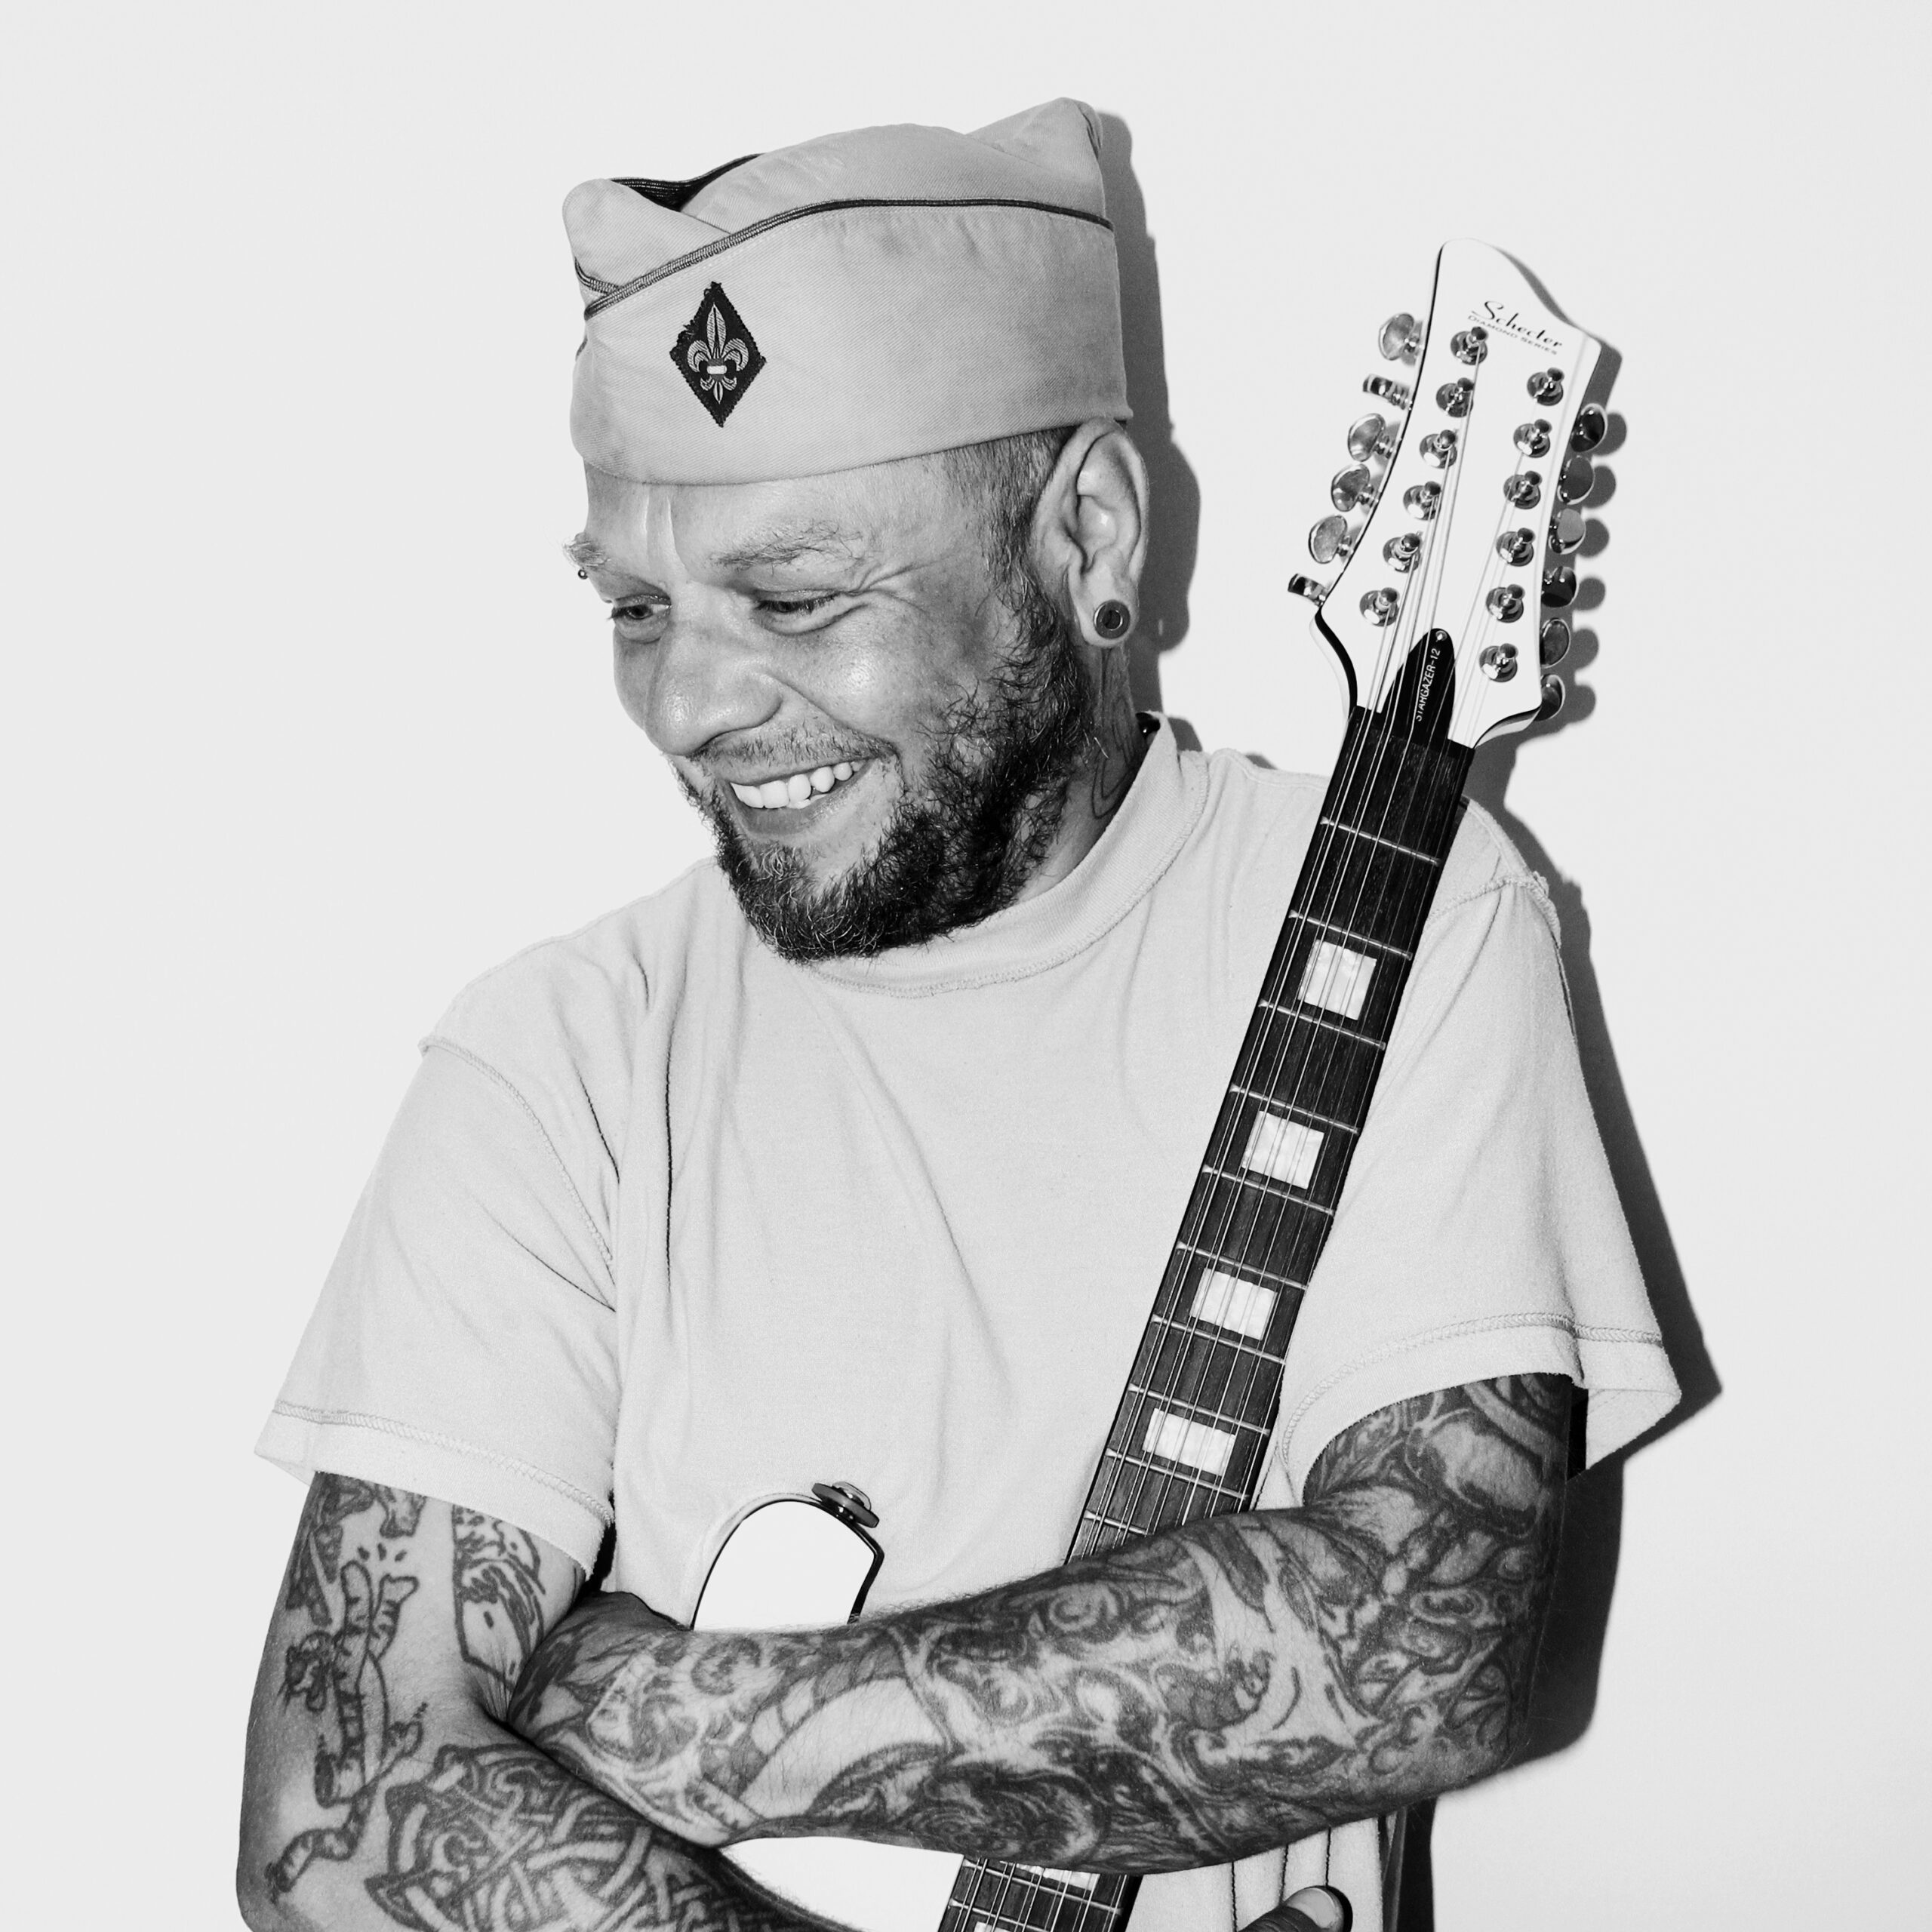 Czarno-biały portret Tomasza "Lipy" Lipnickiego, muzyka. Mężczyzna ma na przedramionach tatuaże, a na głowie czapkę, furażerkę. Rękami obejmuje gitarę elektryczną.